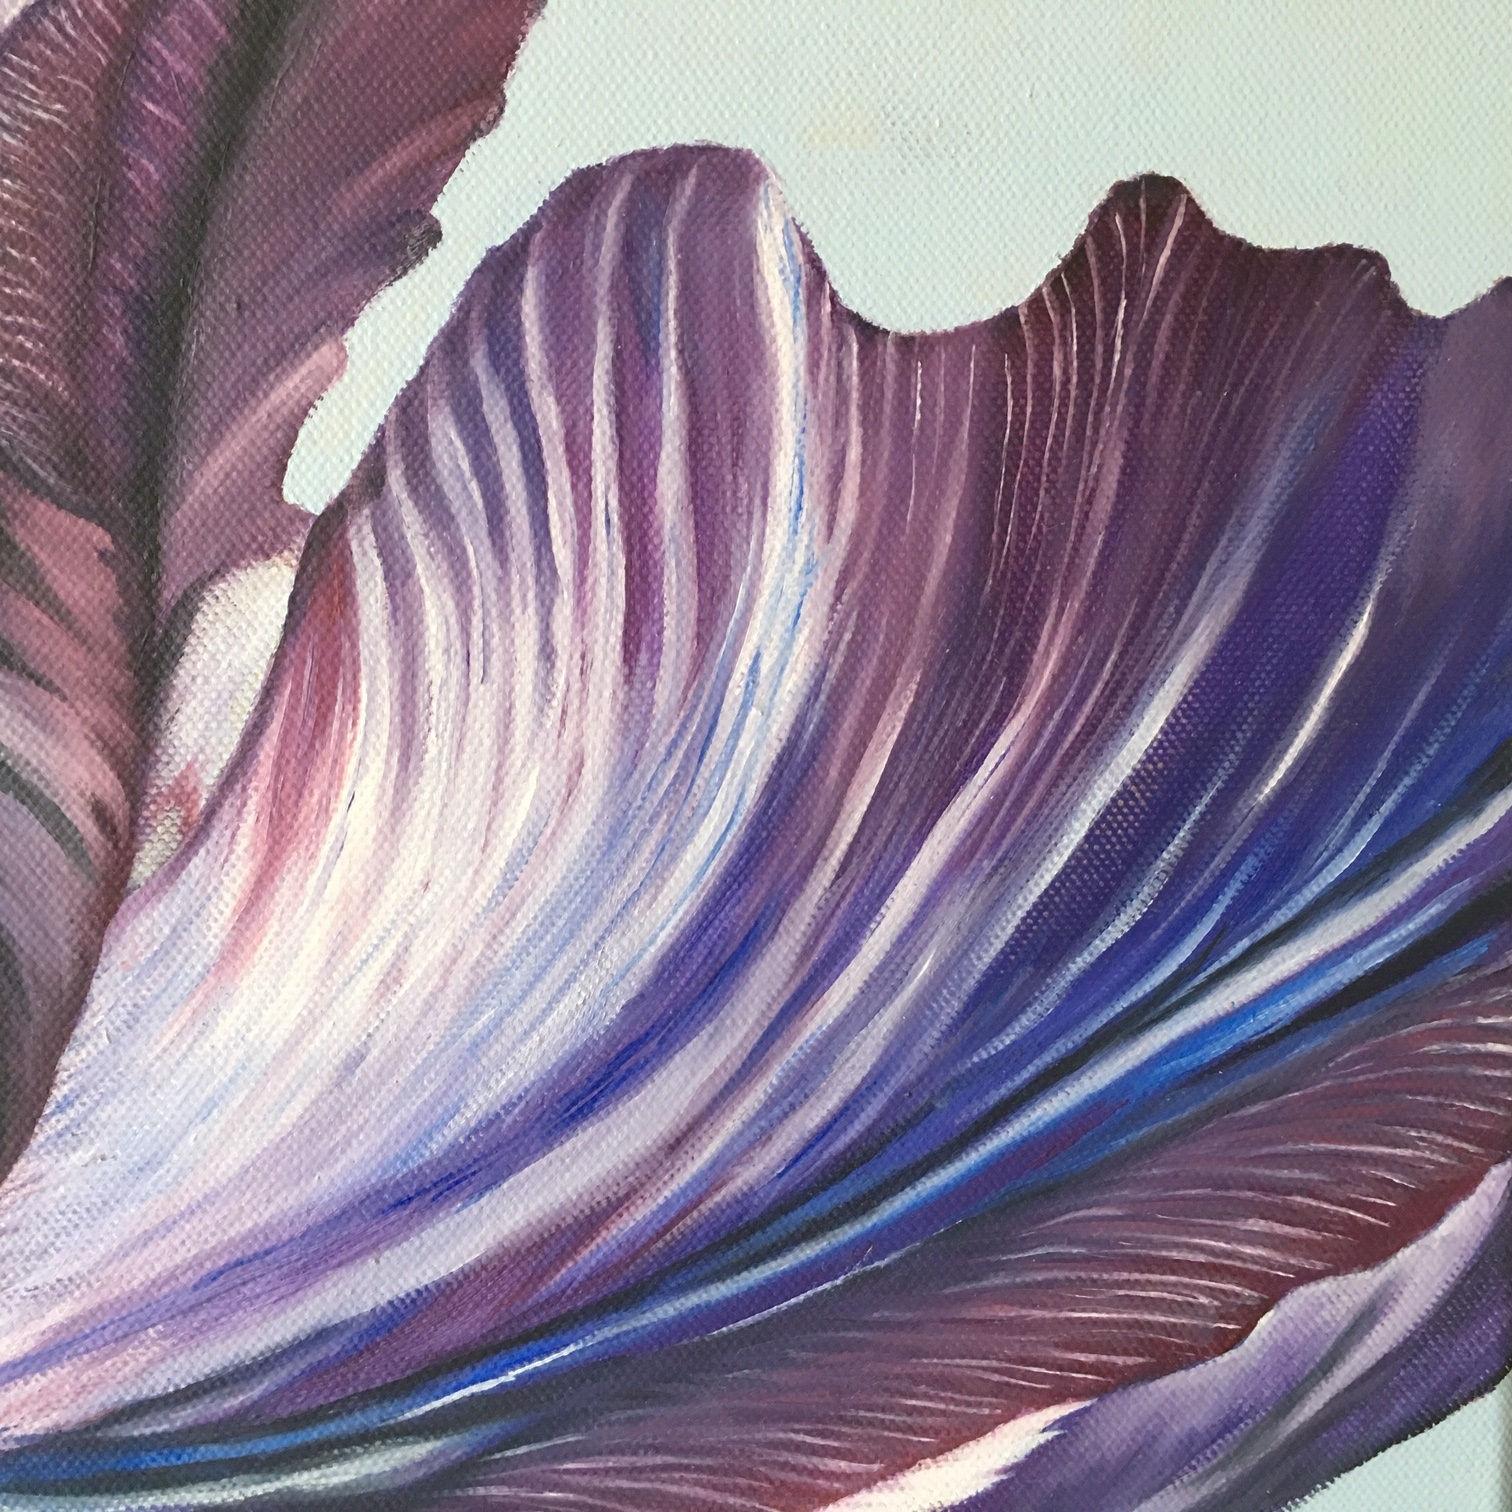 Peinture à l'huile sur toile représentant une tulipe bleue en gros plan. 
Il s'agit de l'une des quatre peintures de fleurs aux couleurs vives et presque stylisées.

A propos de l'artiste :

Esther Hansen a grandi à la campagne et vit